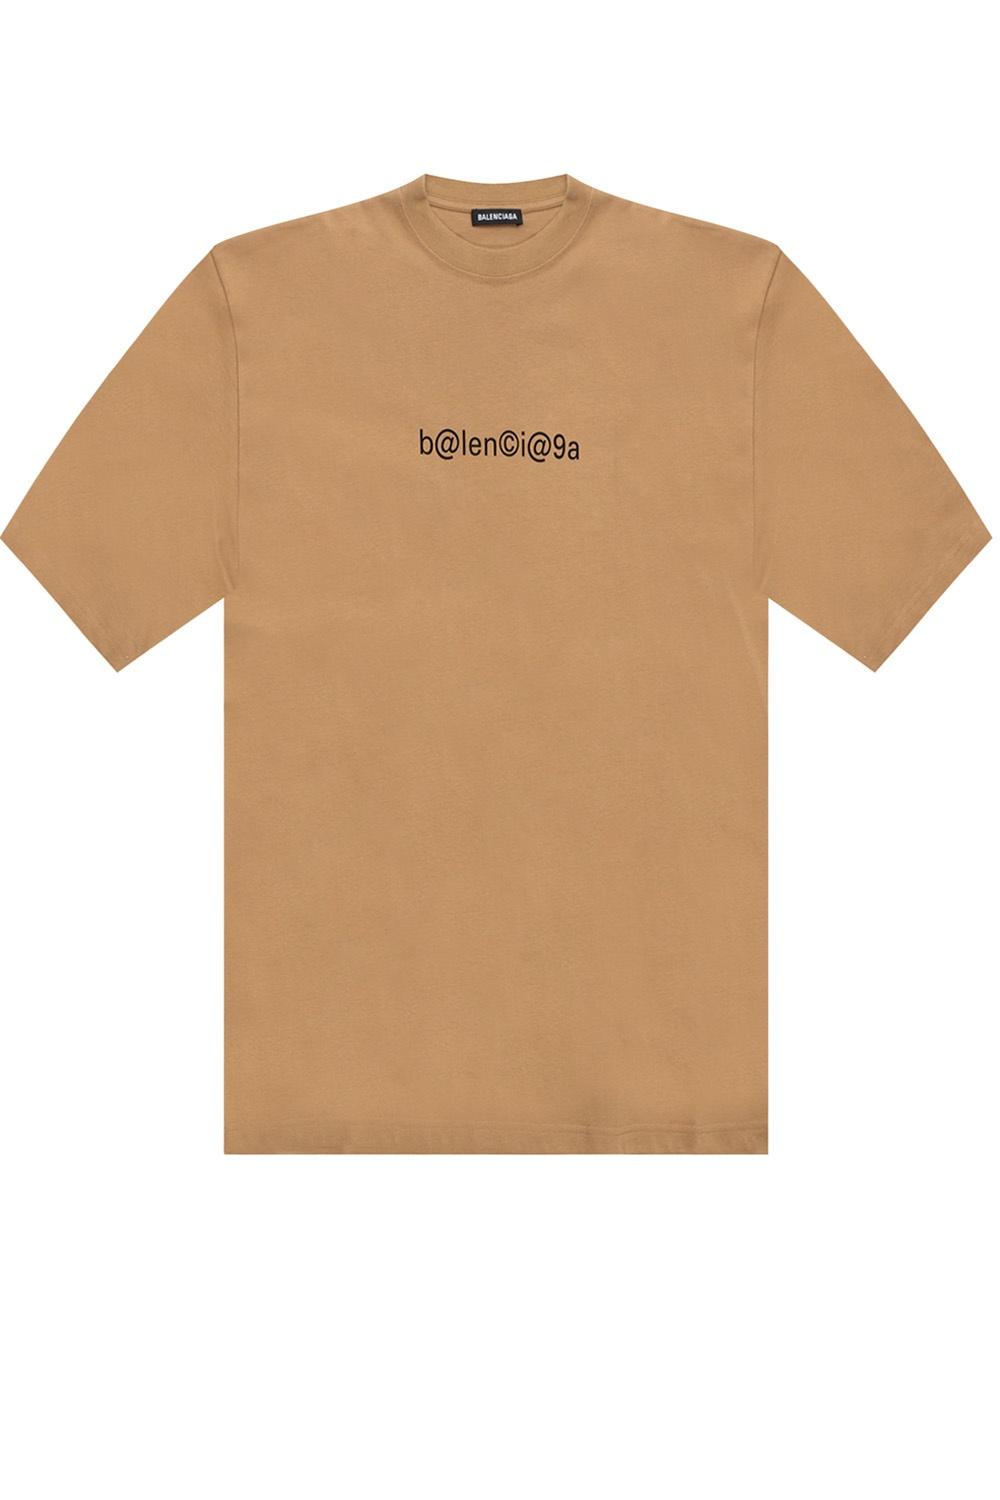 Balenciaga Cotton Logo T-shirt Brown for Men | Lyst